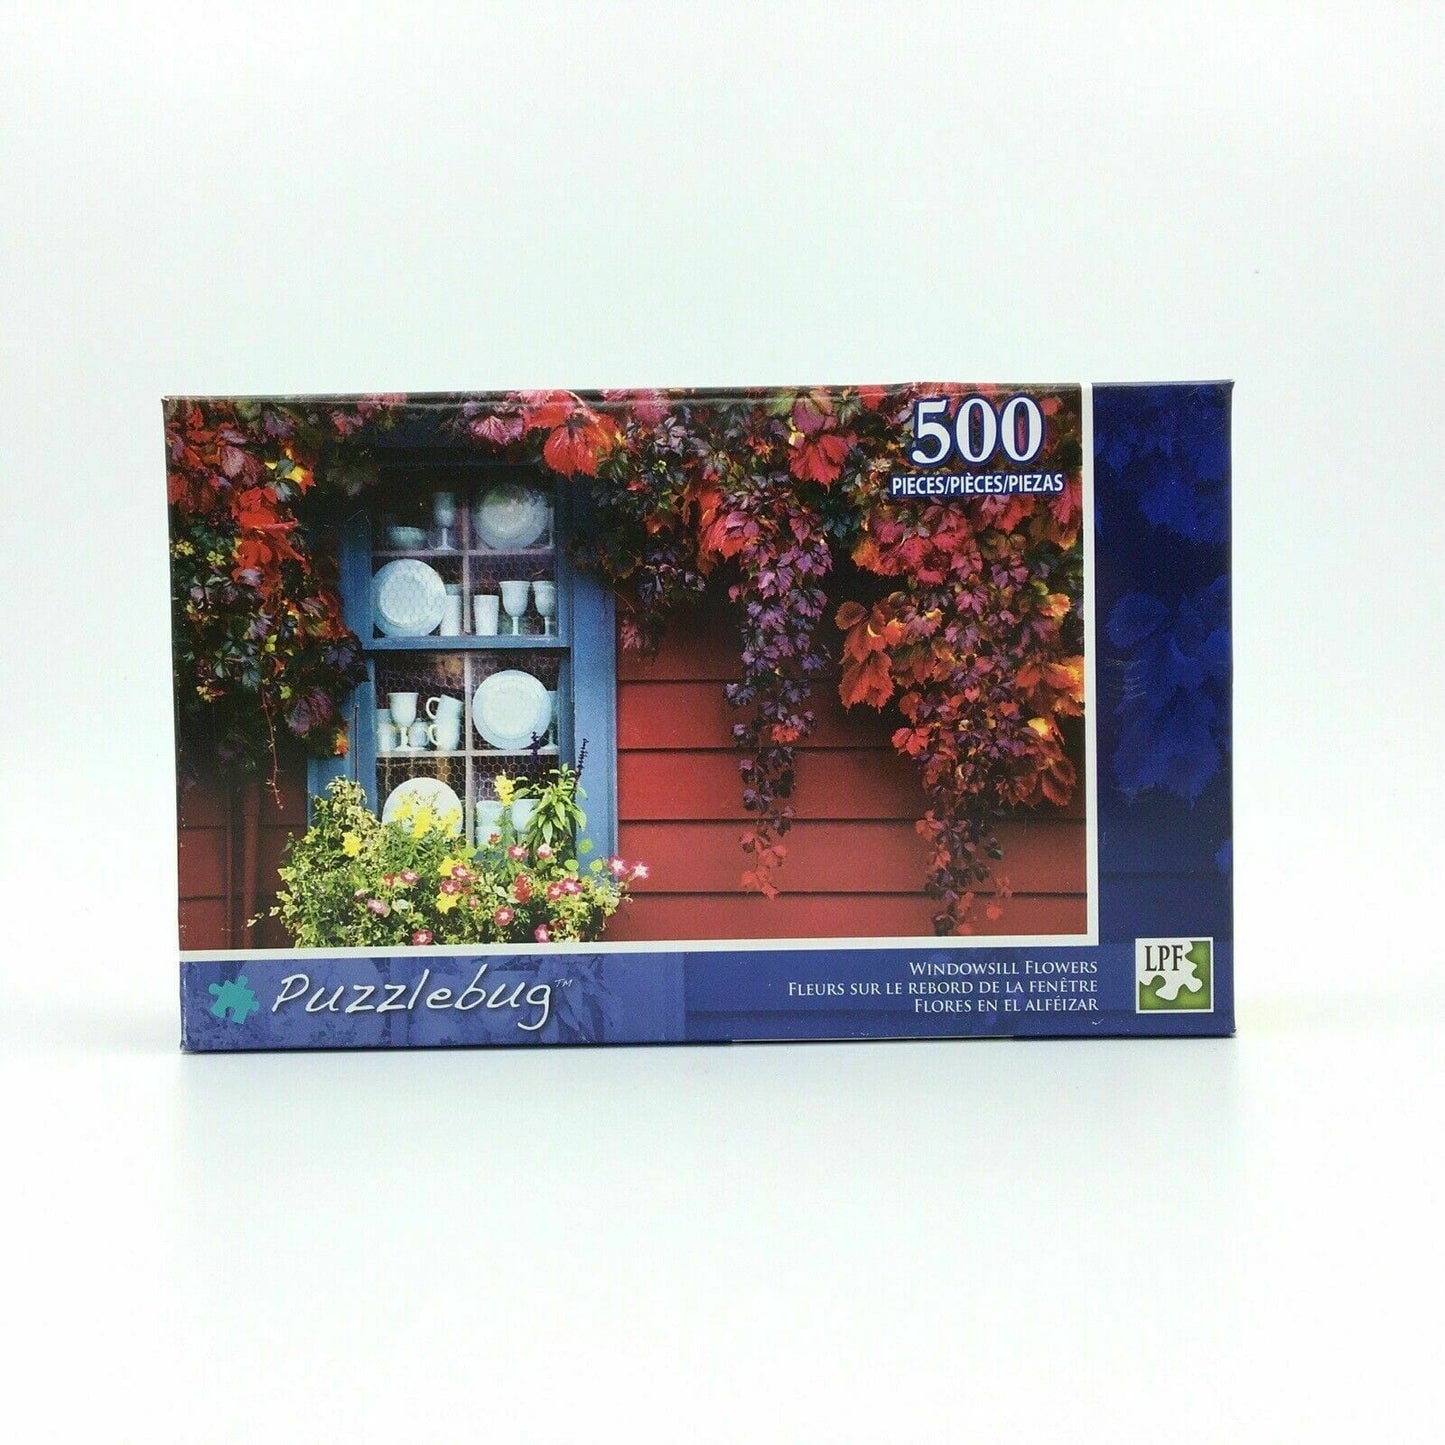 NEW Puzzlebug “Windowsill Flowers” 500 Piece Jigsaw Puzzle NIB